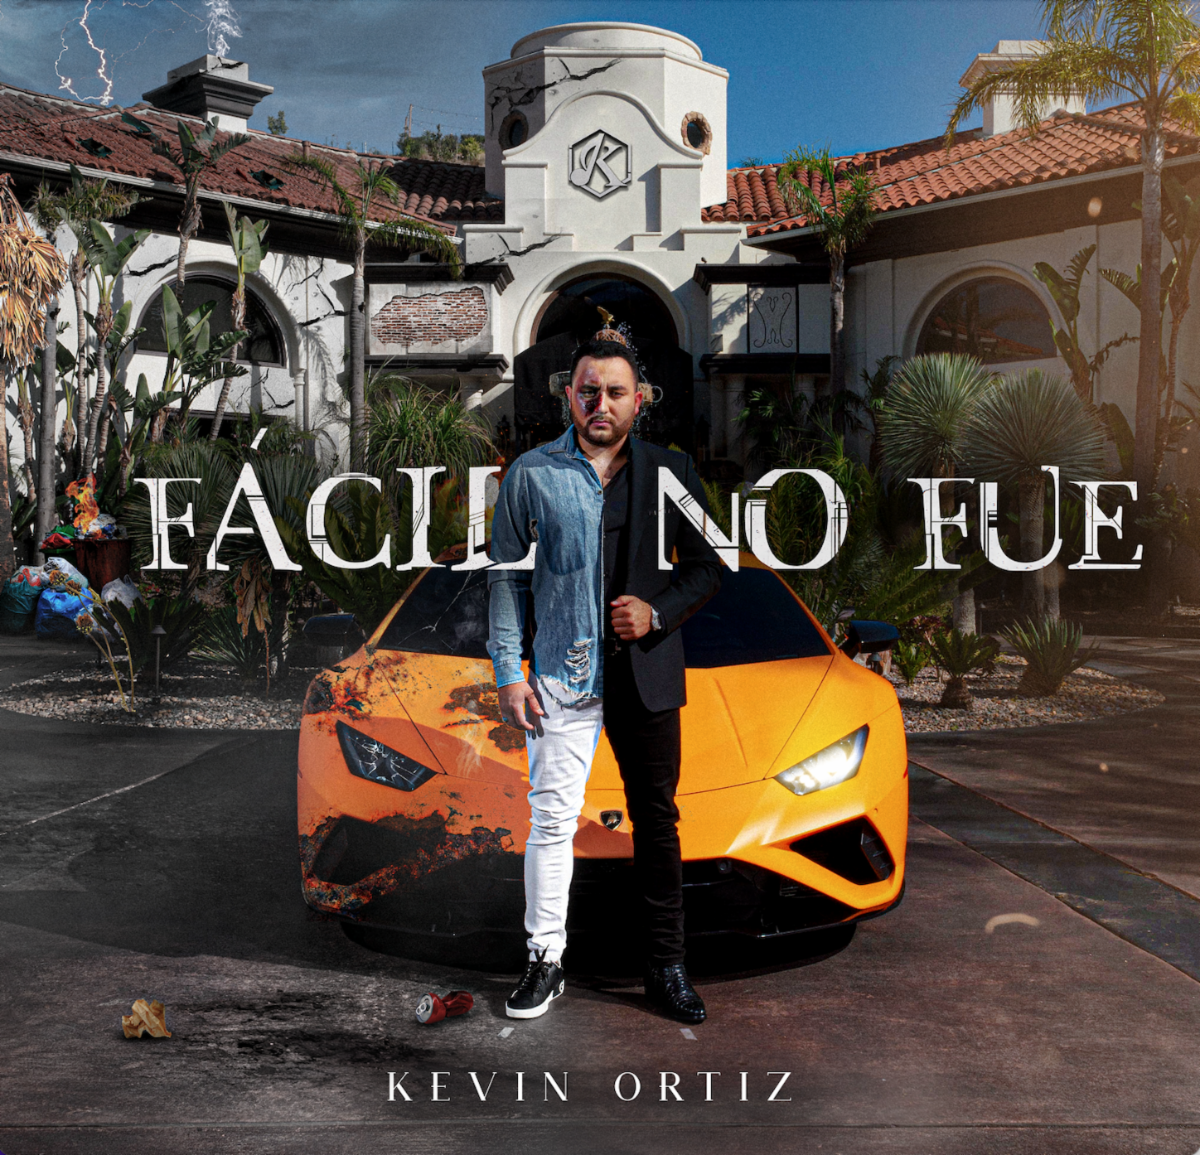 KEVIN ORTIZ lanza nuevo álbum “Fácil No Fue”